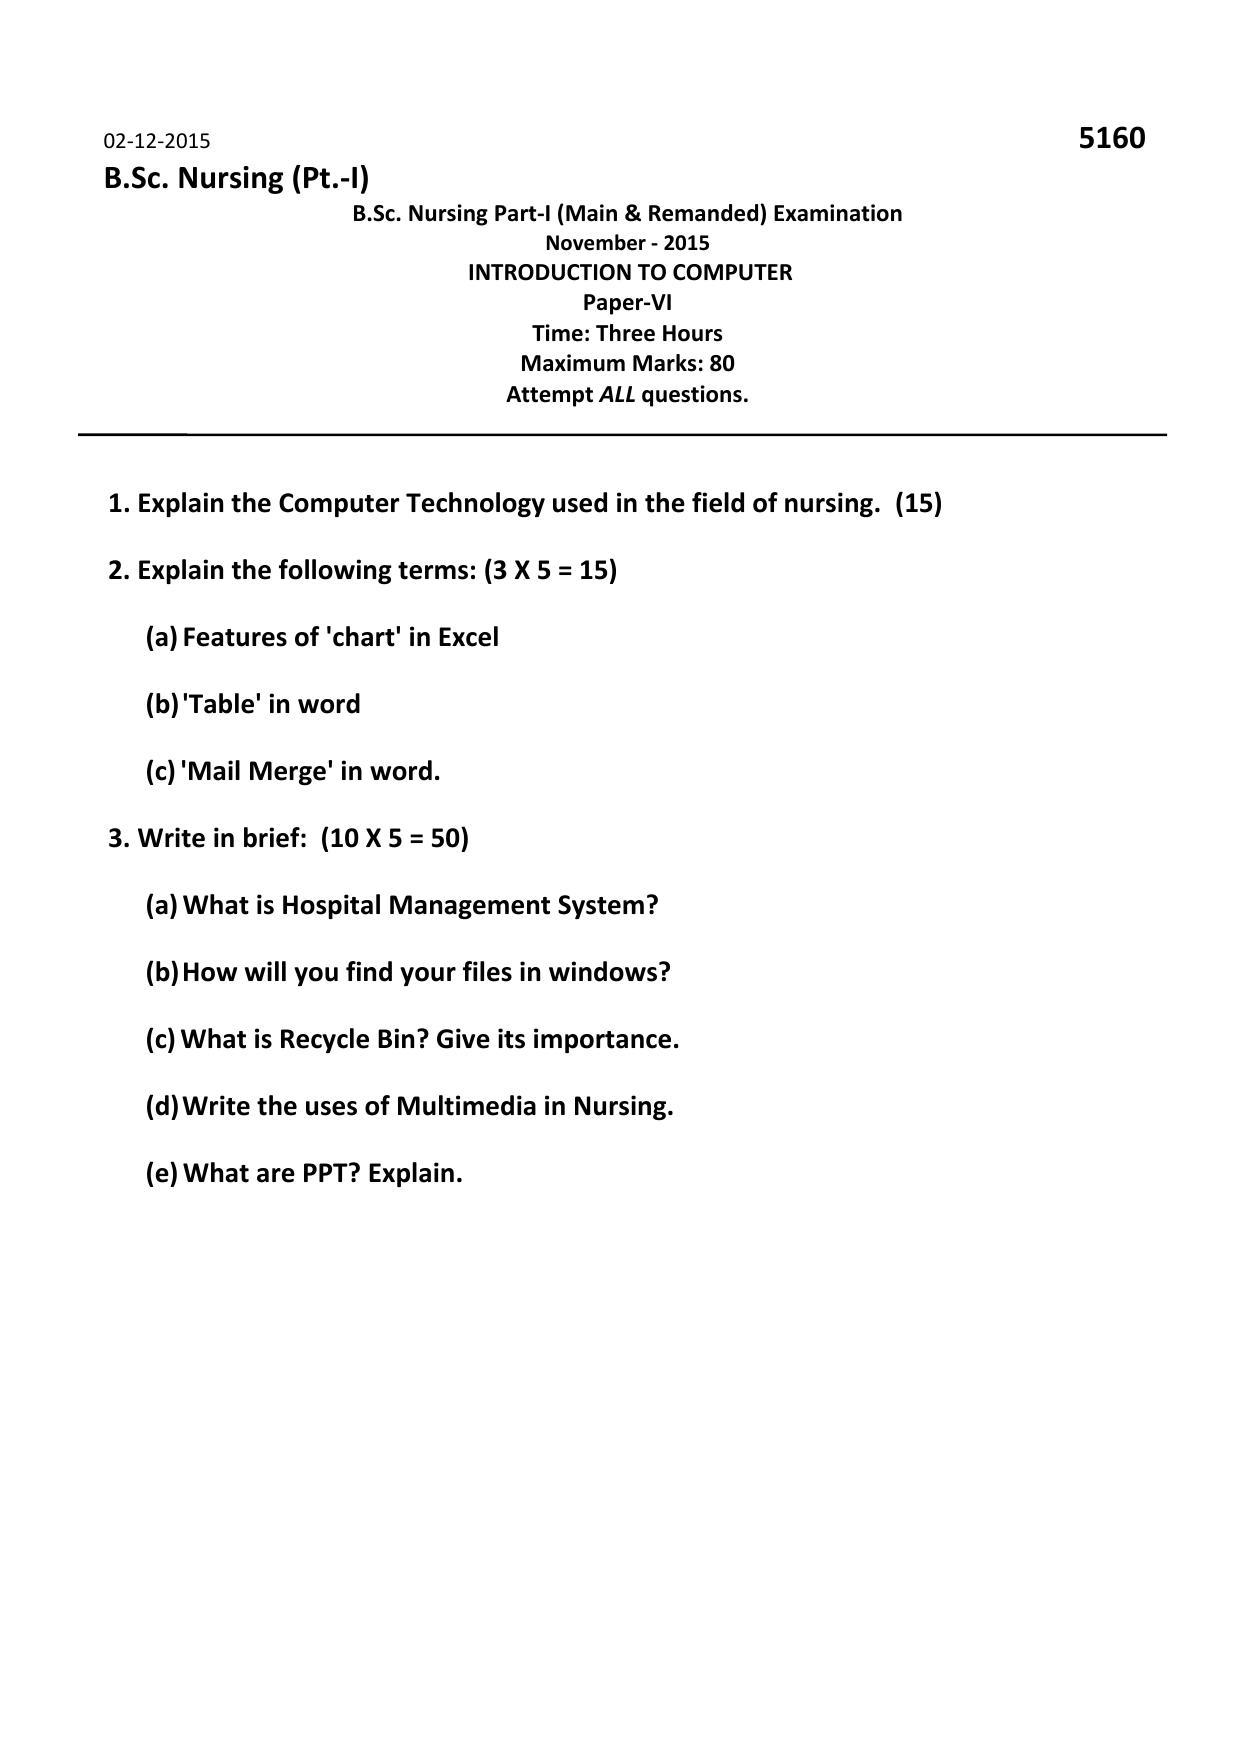 RUHS B.Sc Nursing 2015 Question Paper - Page 6